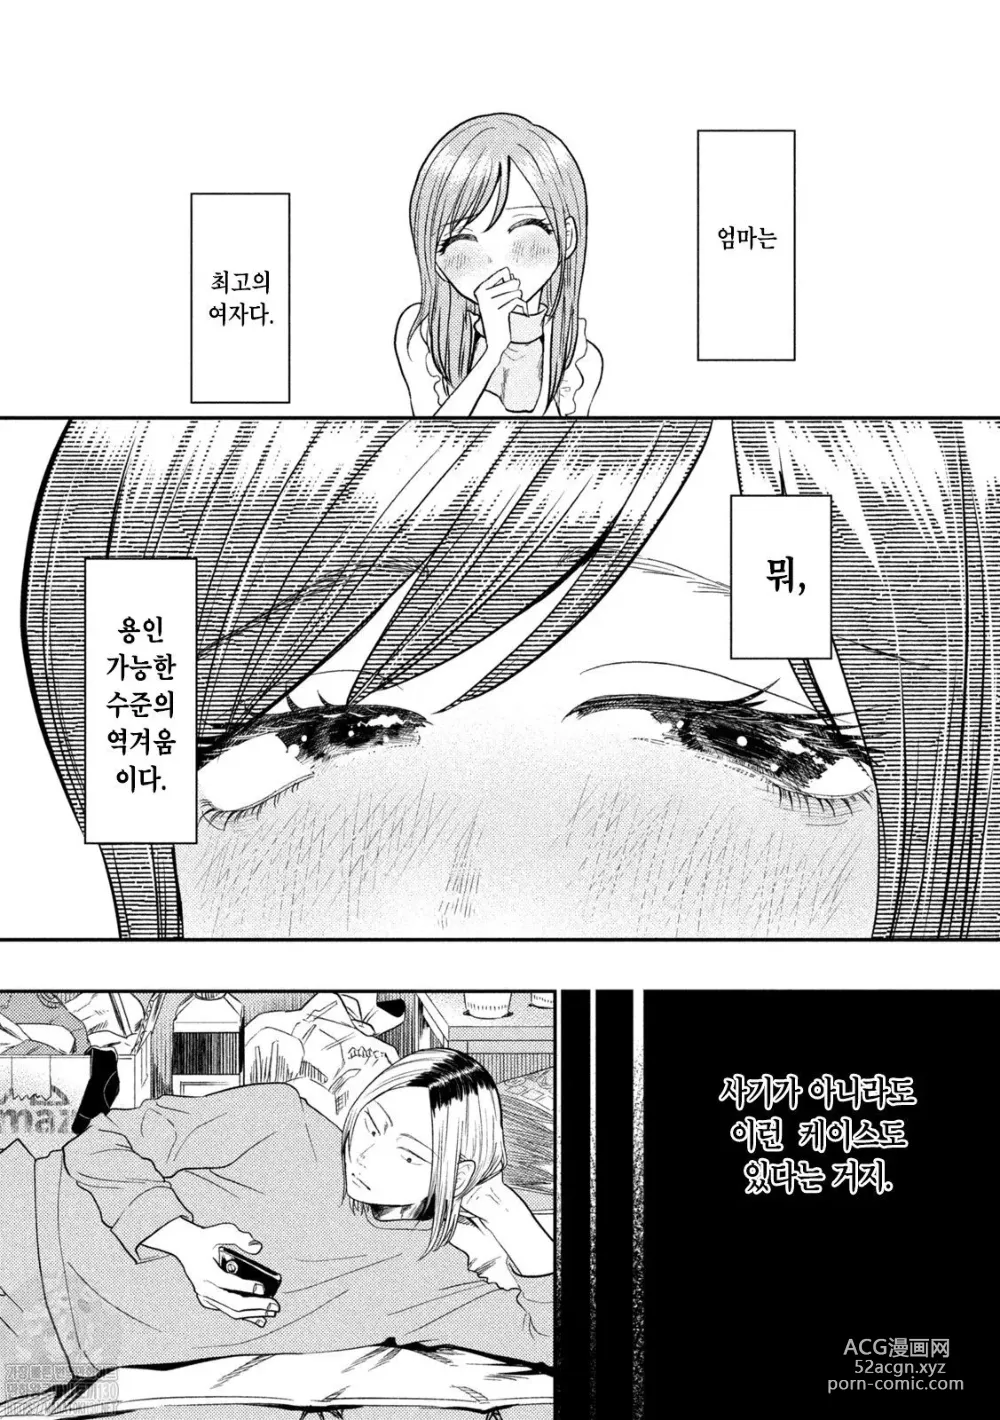 Page 6 of manga Haha wa Tsuyoi.